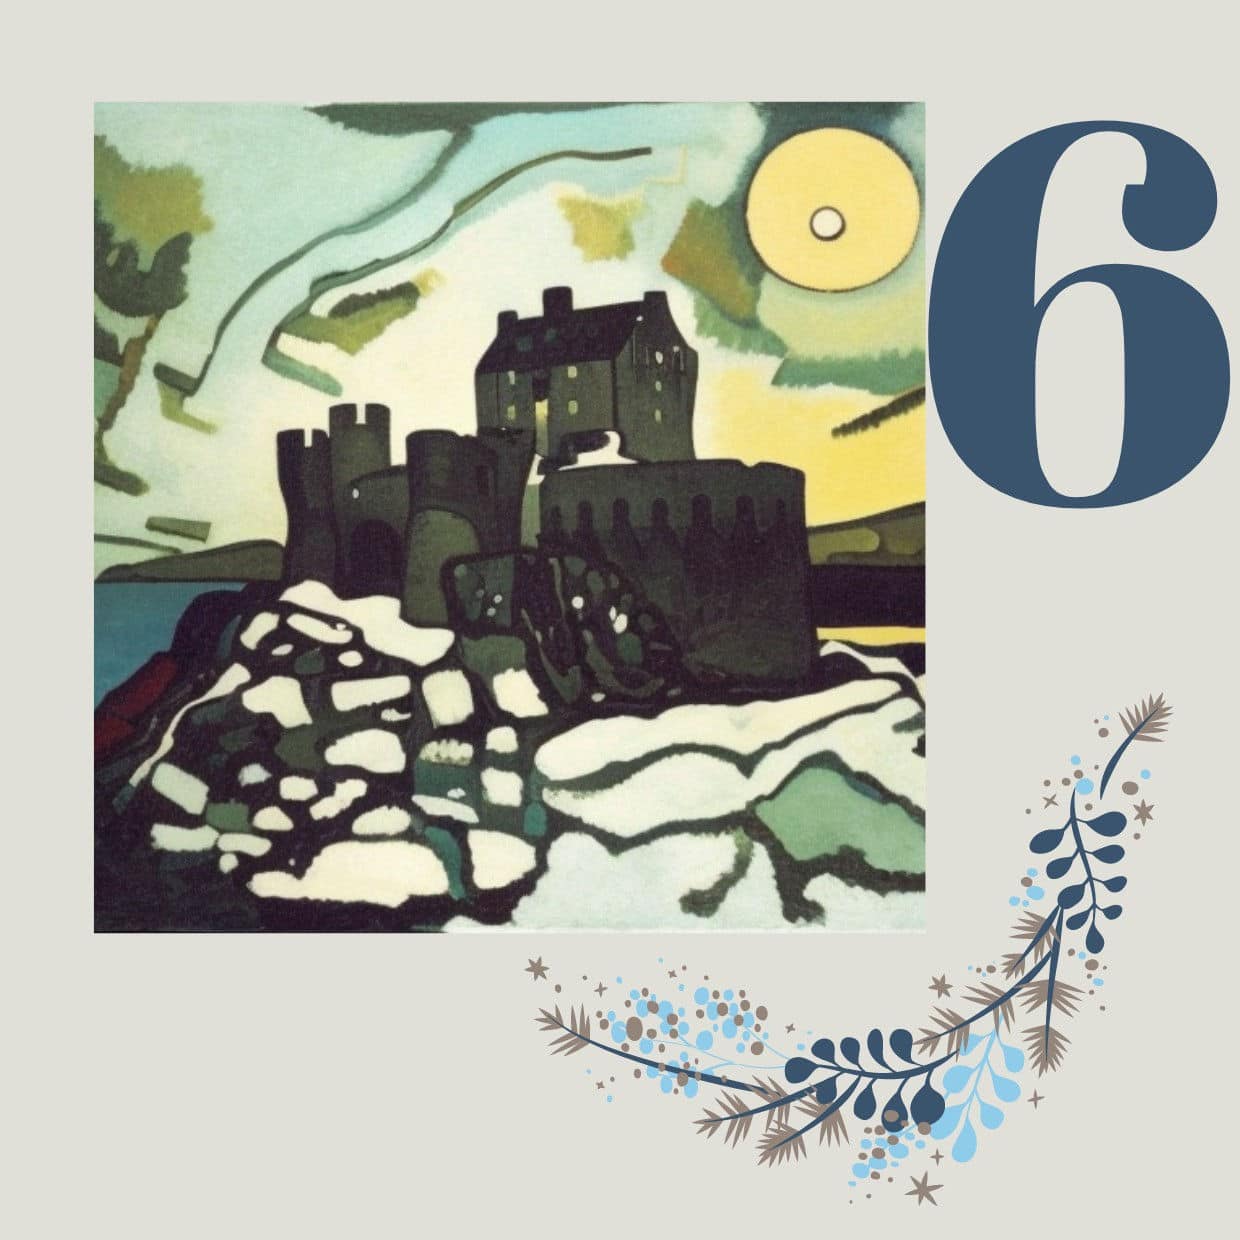 Eilean Donan Castle im Stil von Wassily Kandinsky – dem russischen Maler des "Expressionismus".